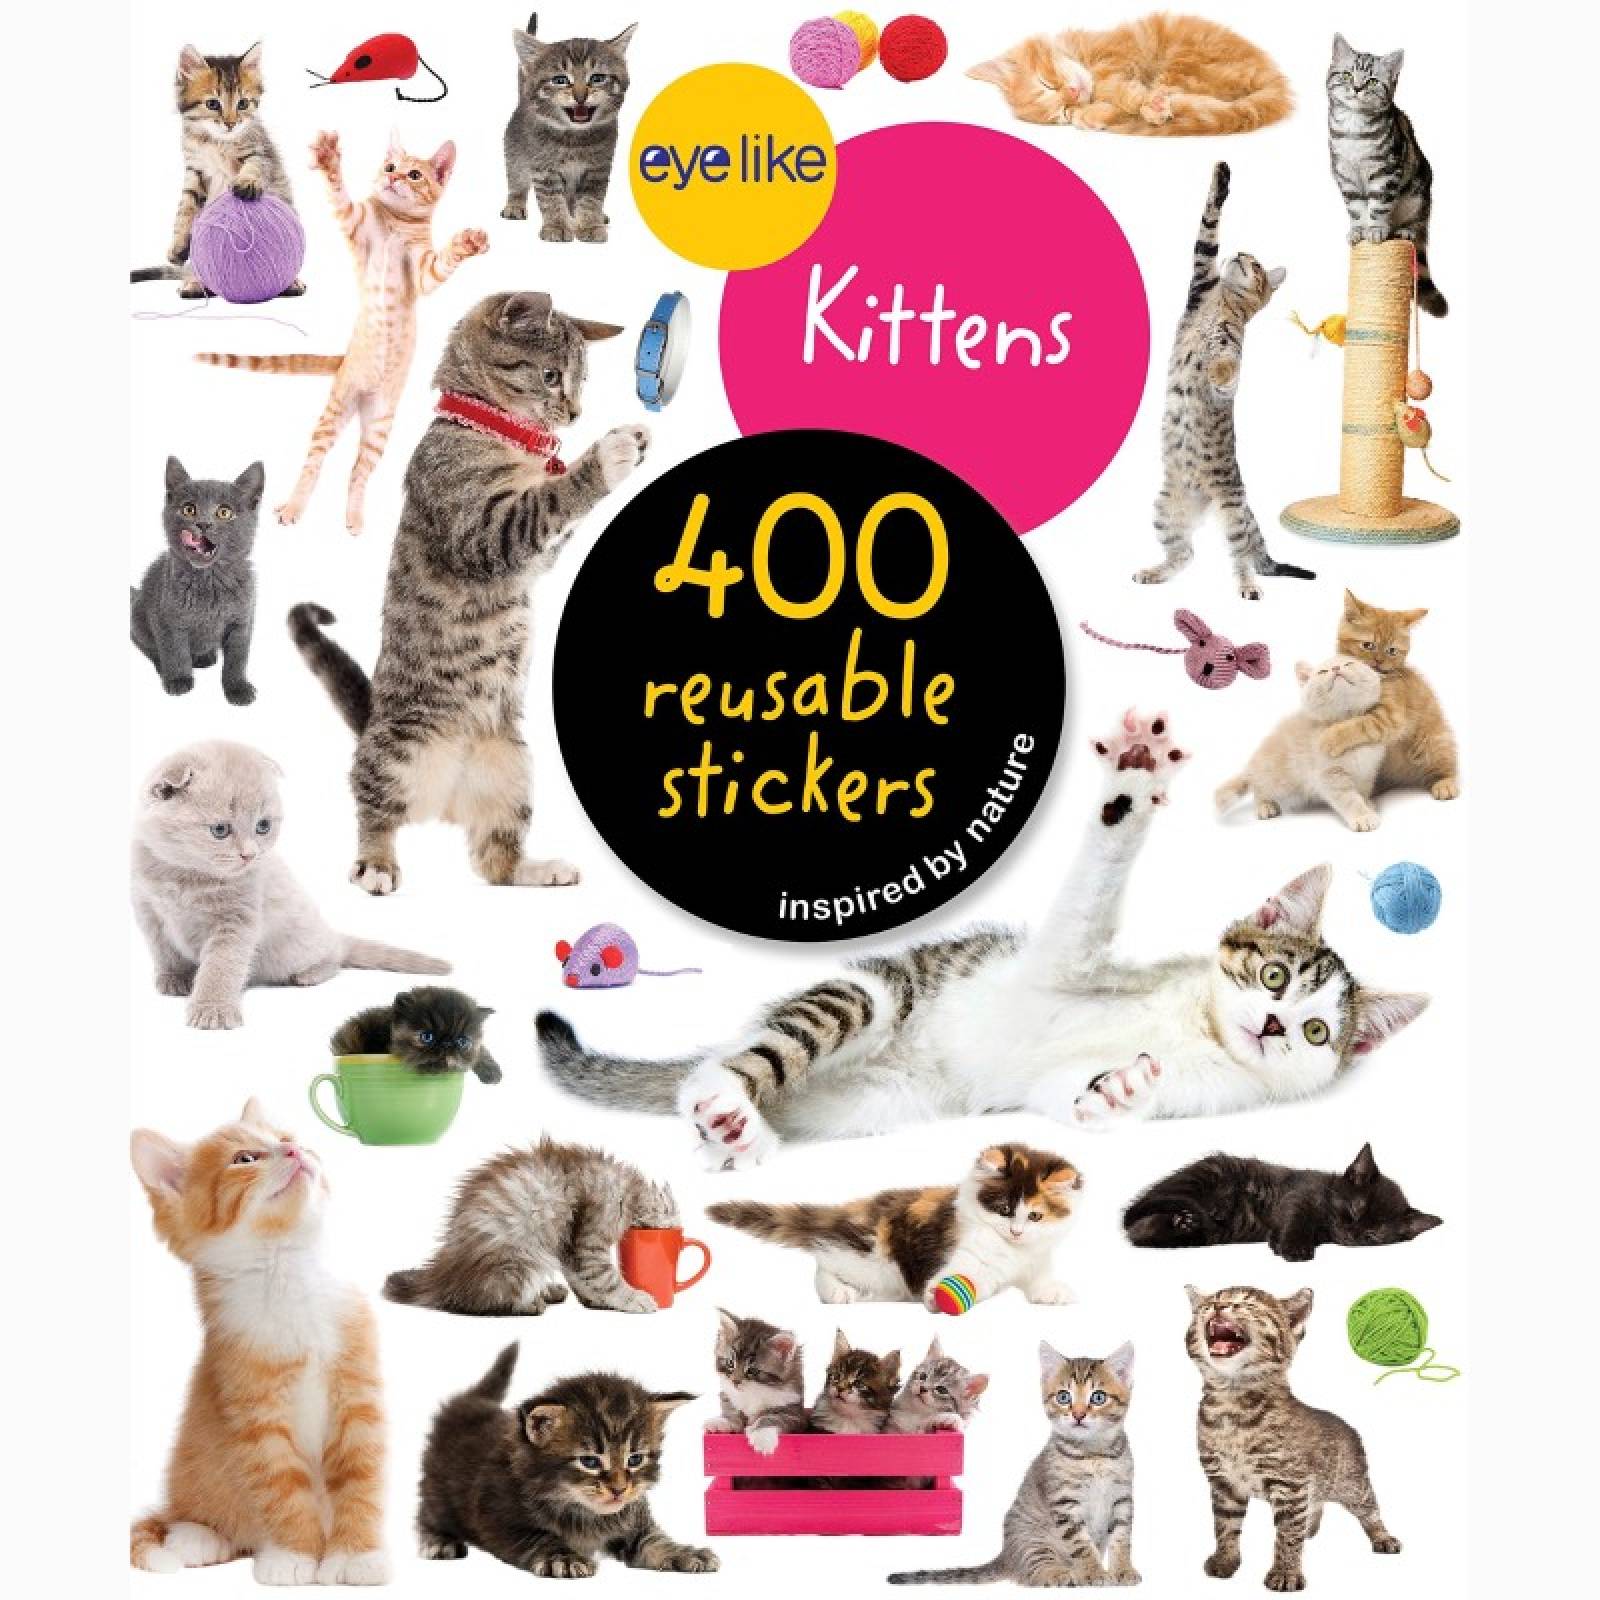 Eyelike Kittens: 400 Reusable Stickers